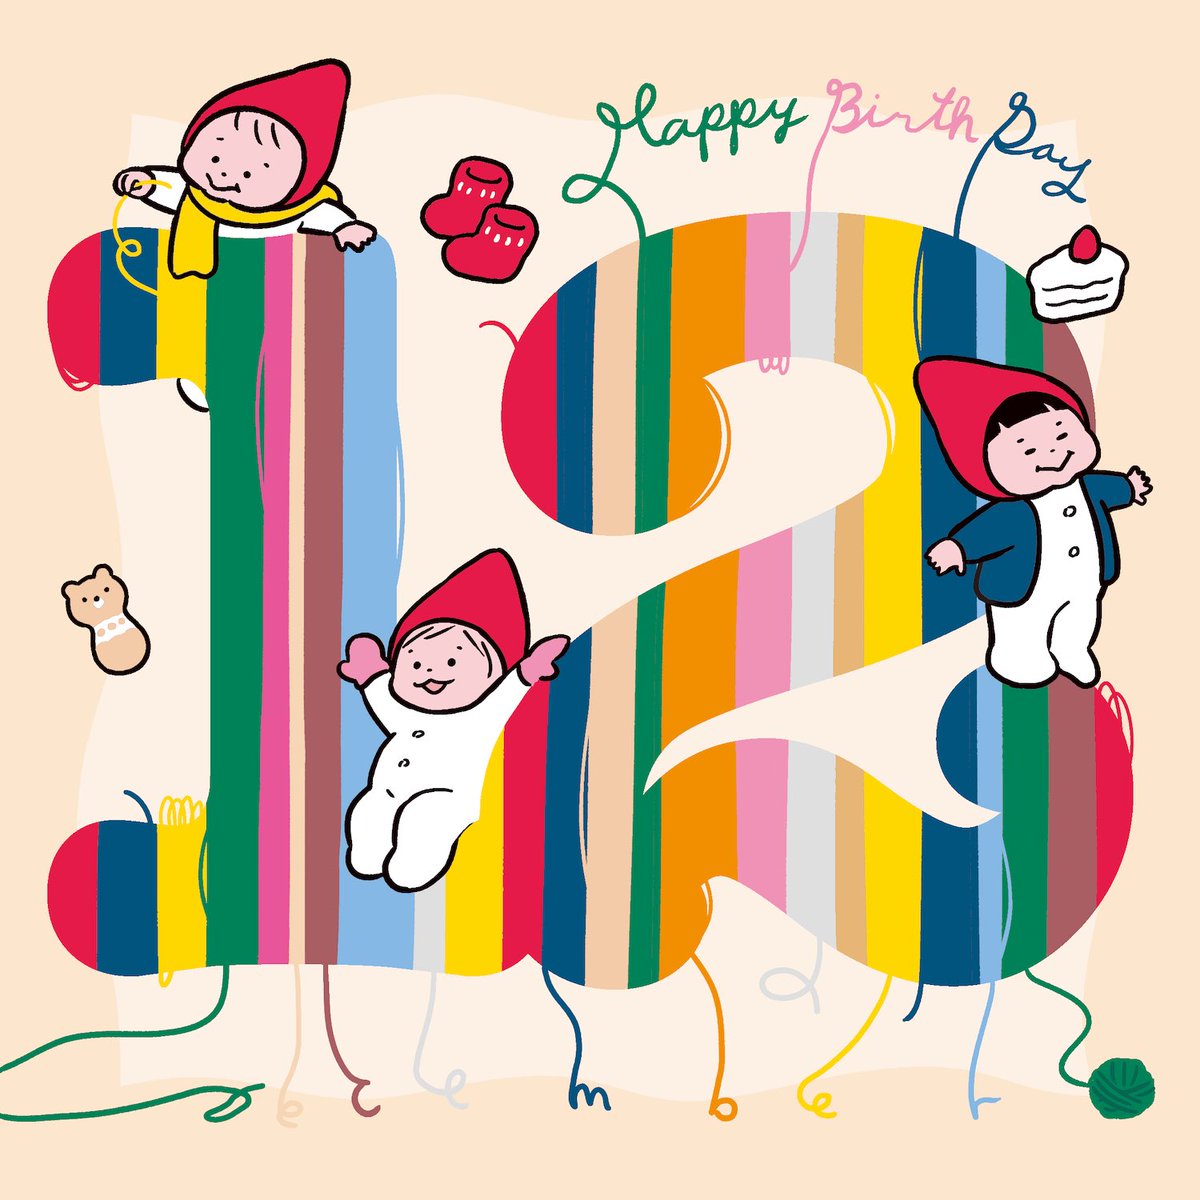 「12月生まれのみんな、お誕生日おめでとう〜暖かくしてね〜。 」|たろう(な気分)のイラスト